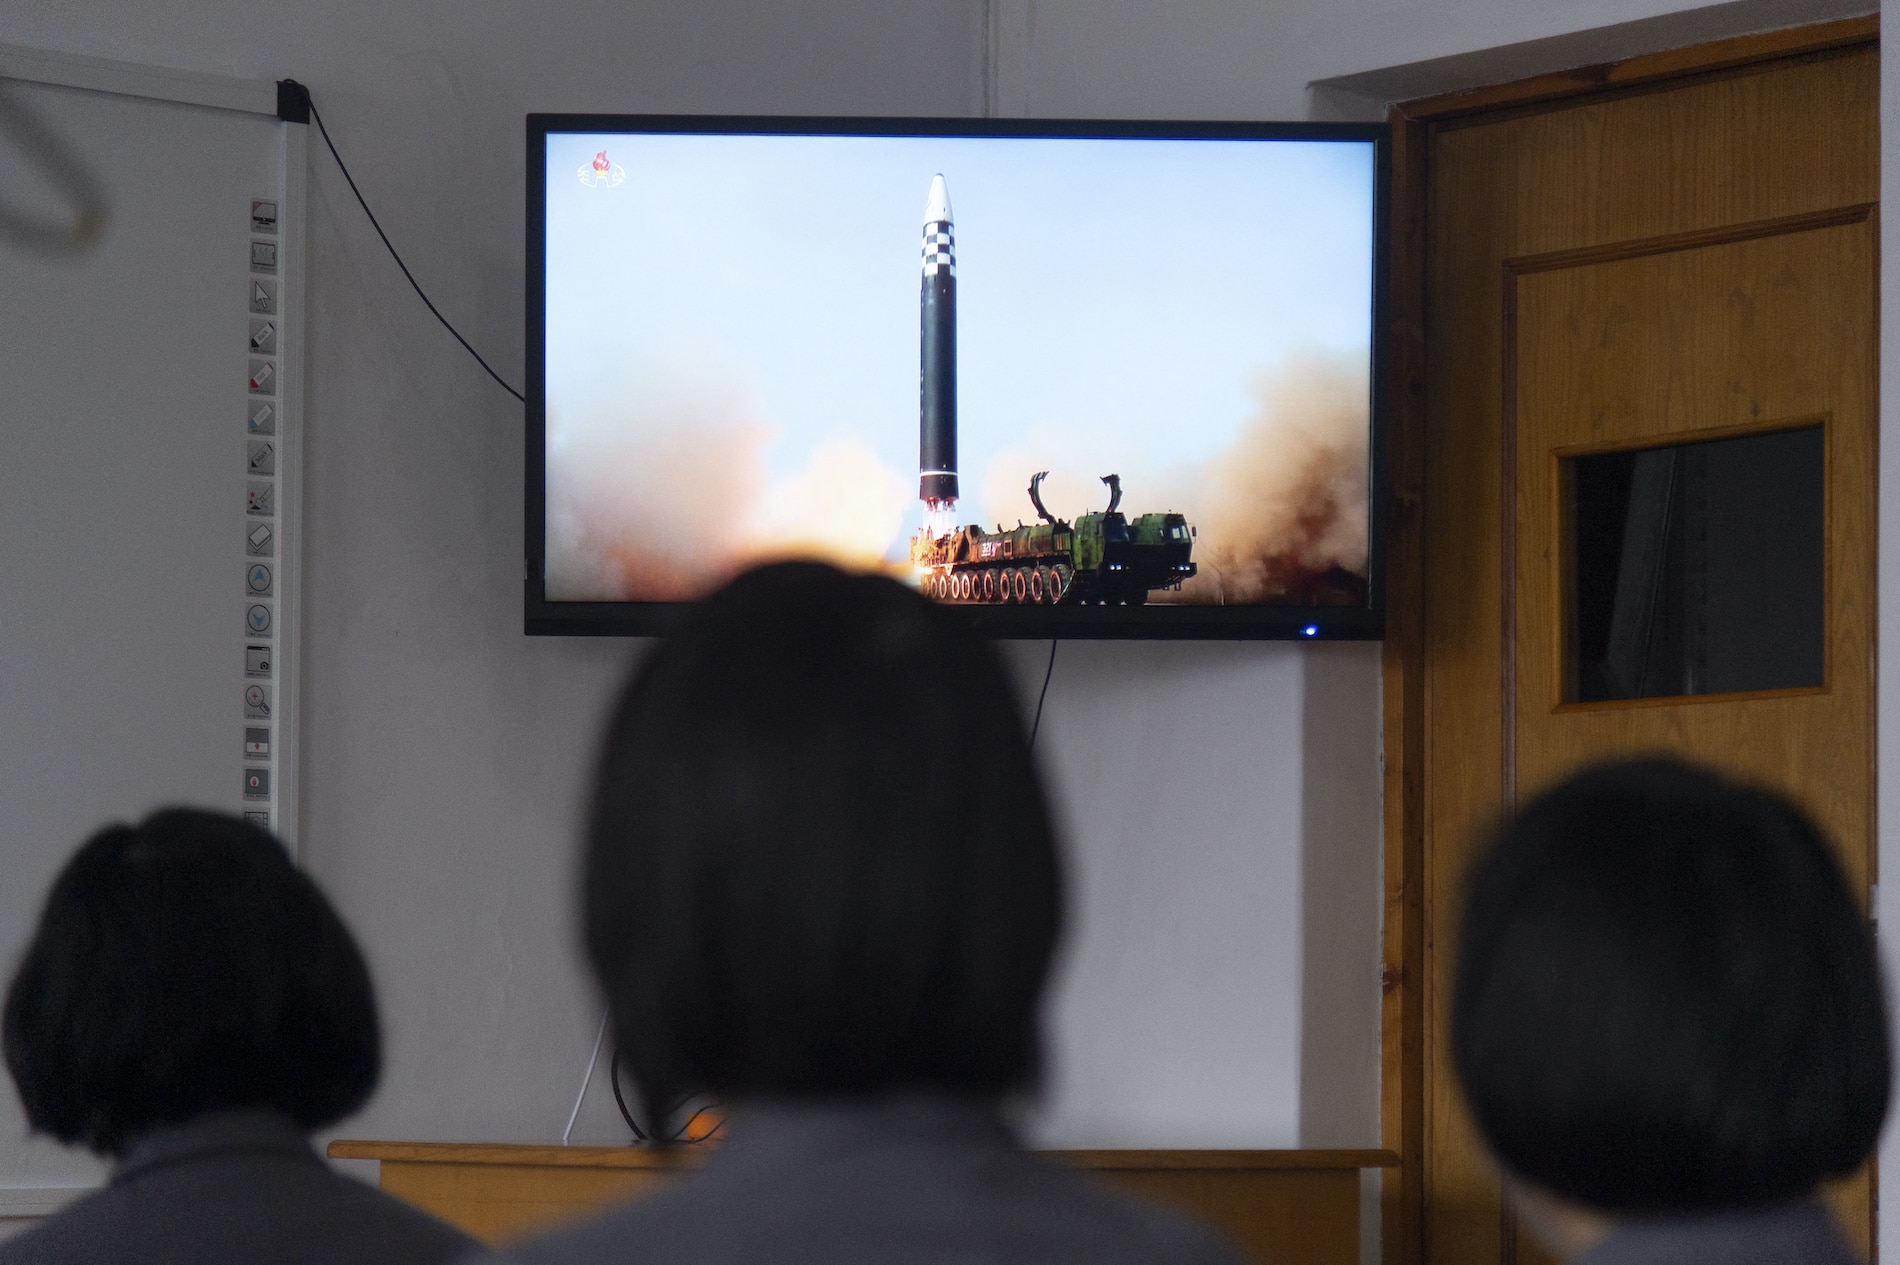 Corea del Norte se declara un estado nuclear con capacidad de lanzar “ataques preventivos”